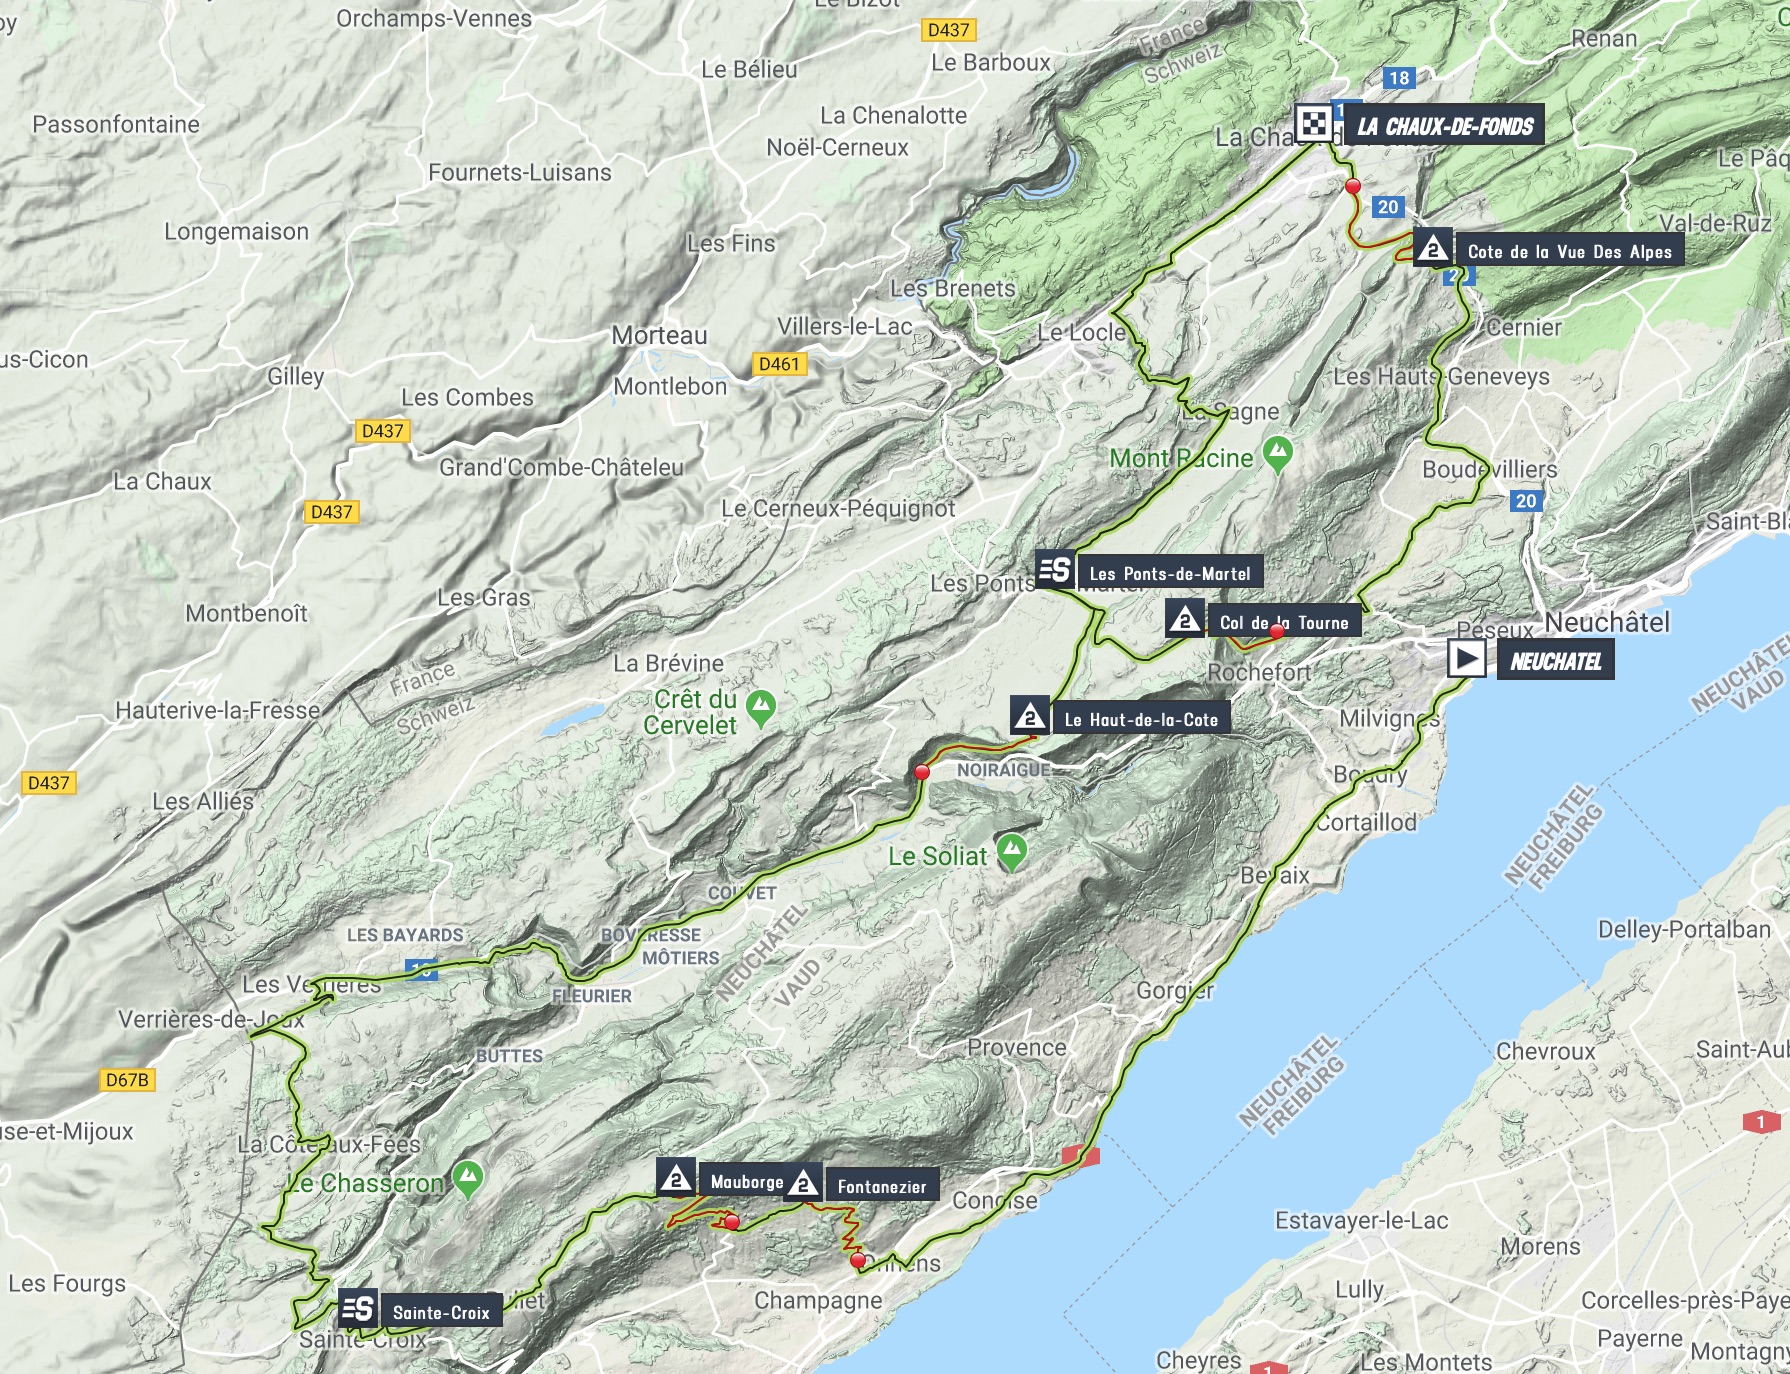 tour-de-romandie-2019-stage-1-map-d4a2db7d53.jpg